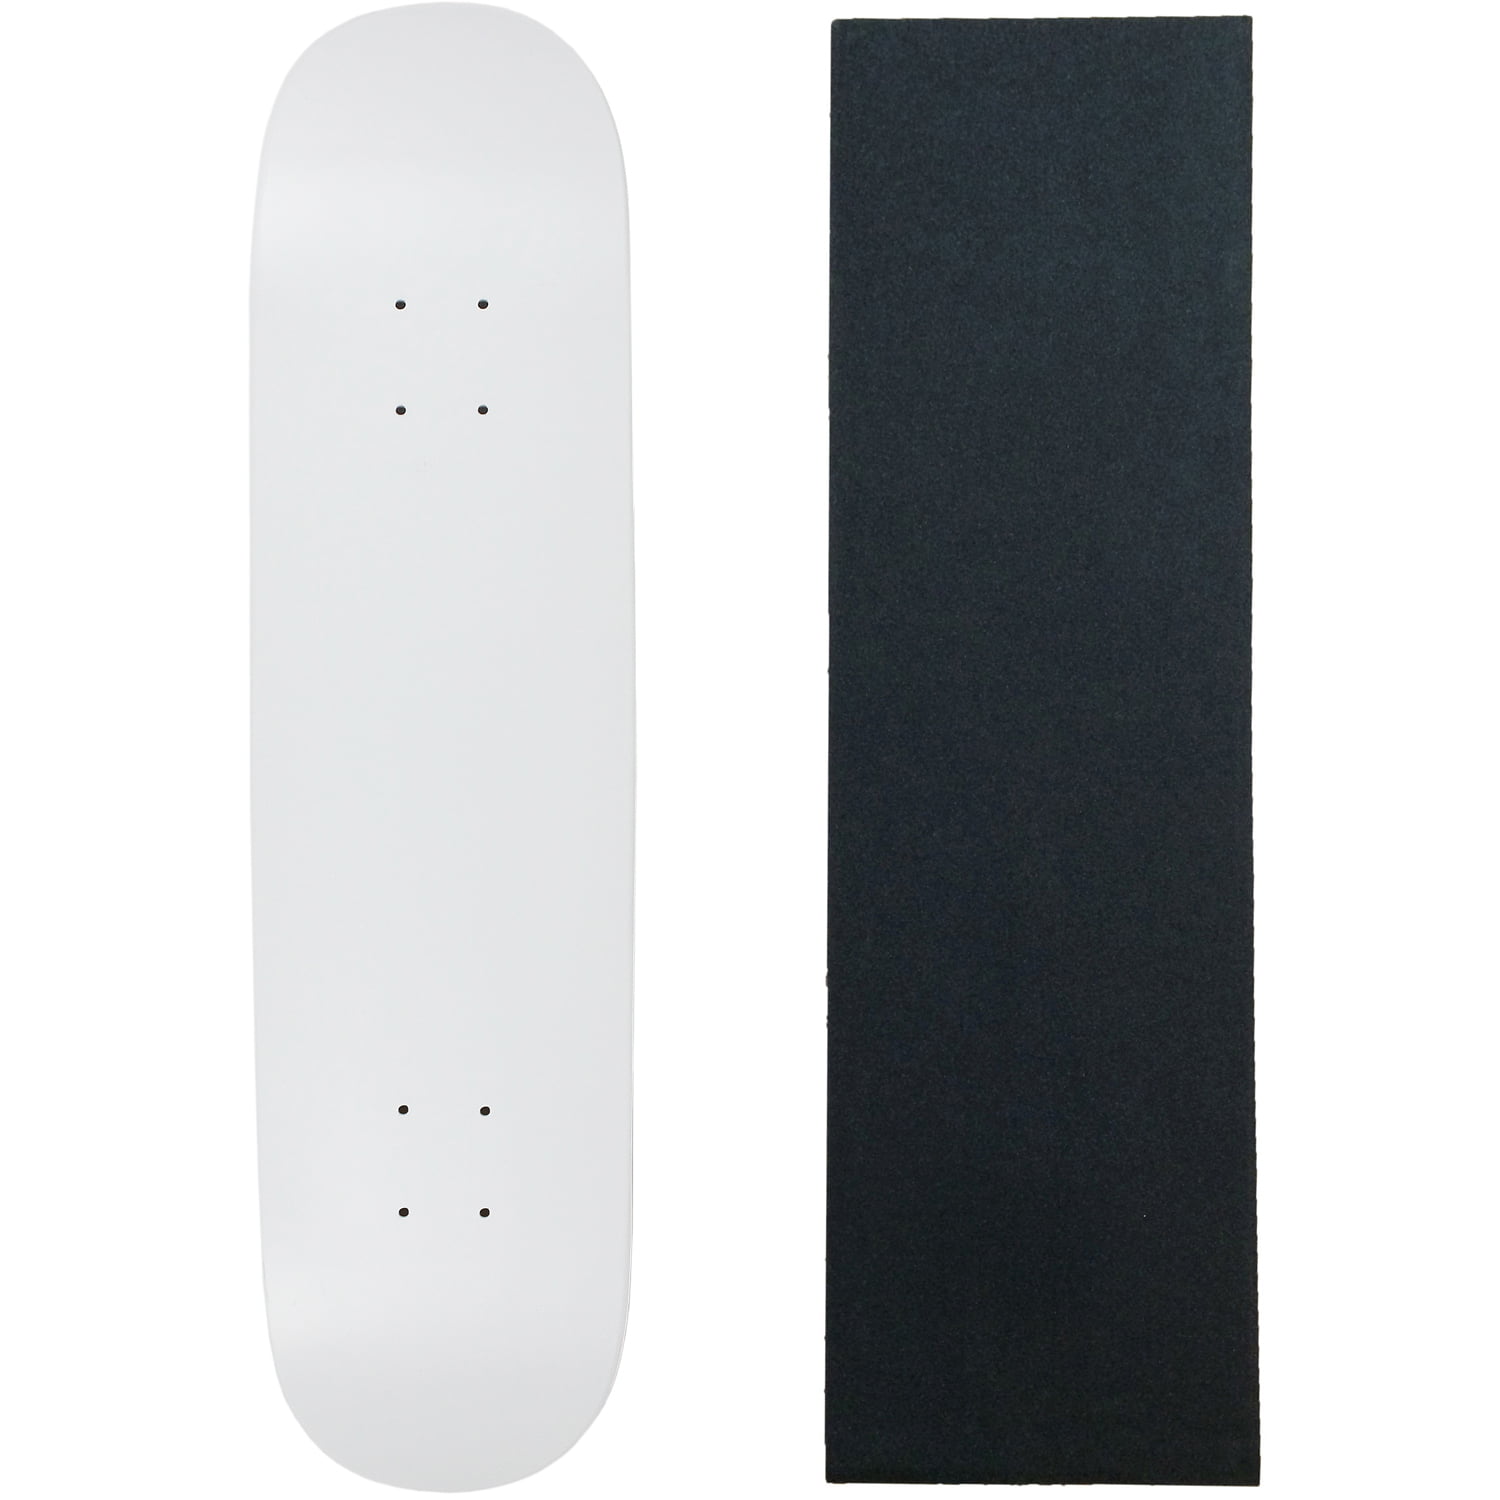 5 BLANK Skateboard DECKS Black & White 8.5 in GRIPTAPE 